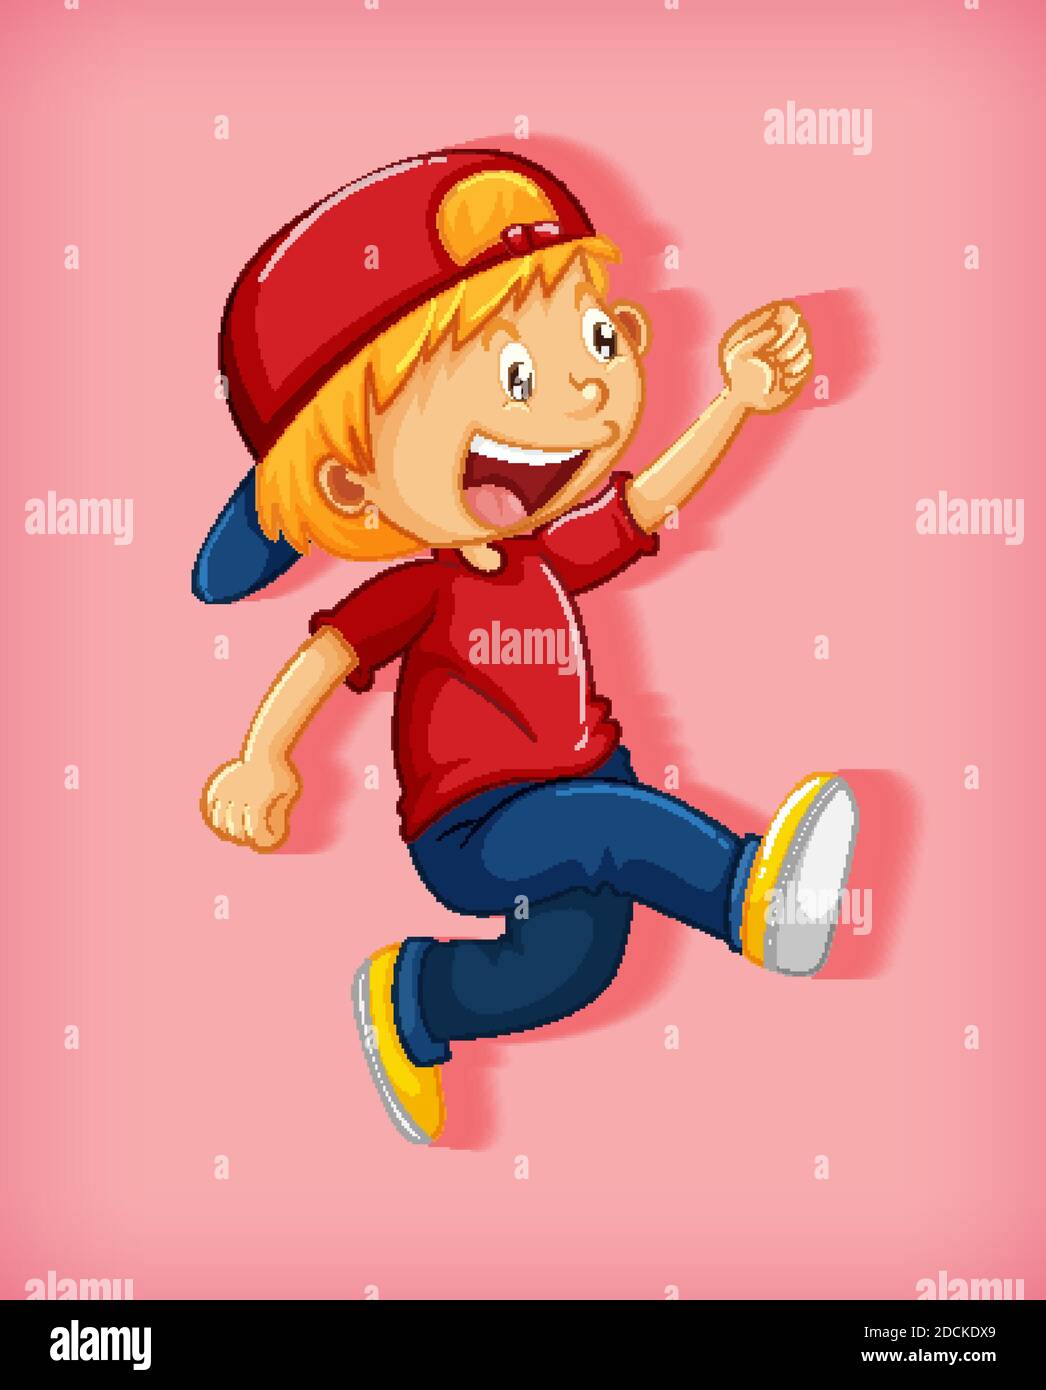 Adorable garçon portant une casquette rouge avec dispositif d'étrangleur en  position de marche personnage de dessin animé isolé sur une illustration de  fond rose Image Vectorielle Stock - Alamy